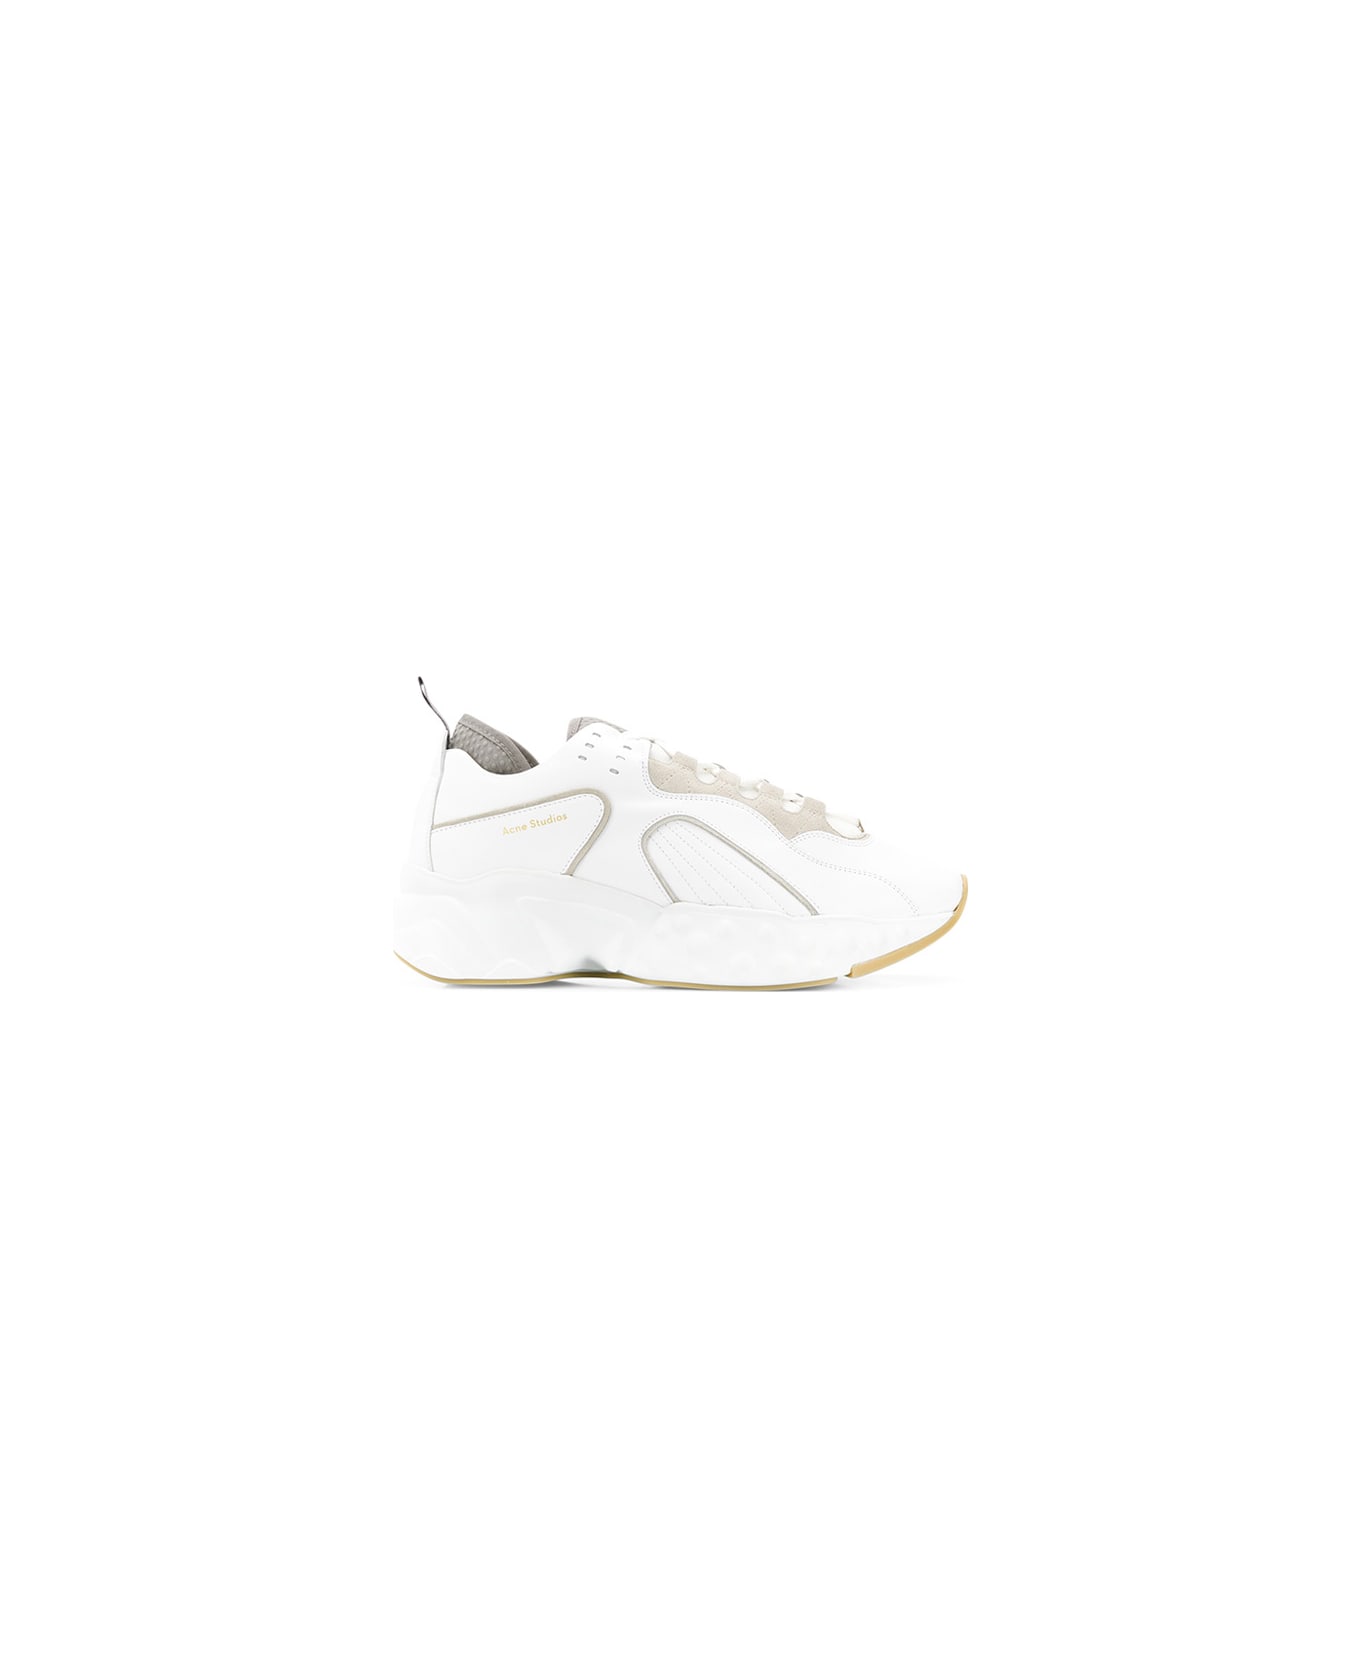 Acne Studios Rockaway Sneakers - White スニーカー